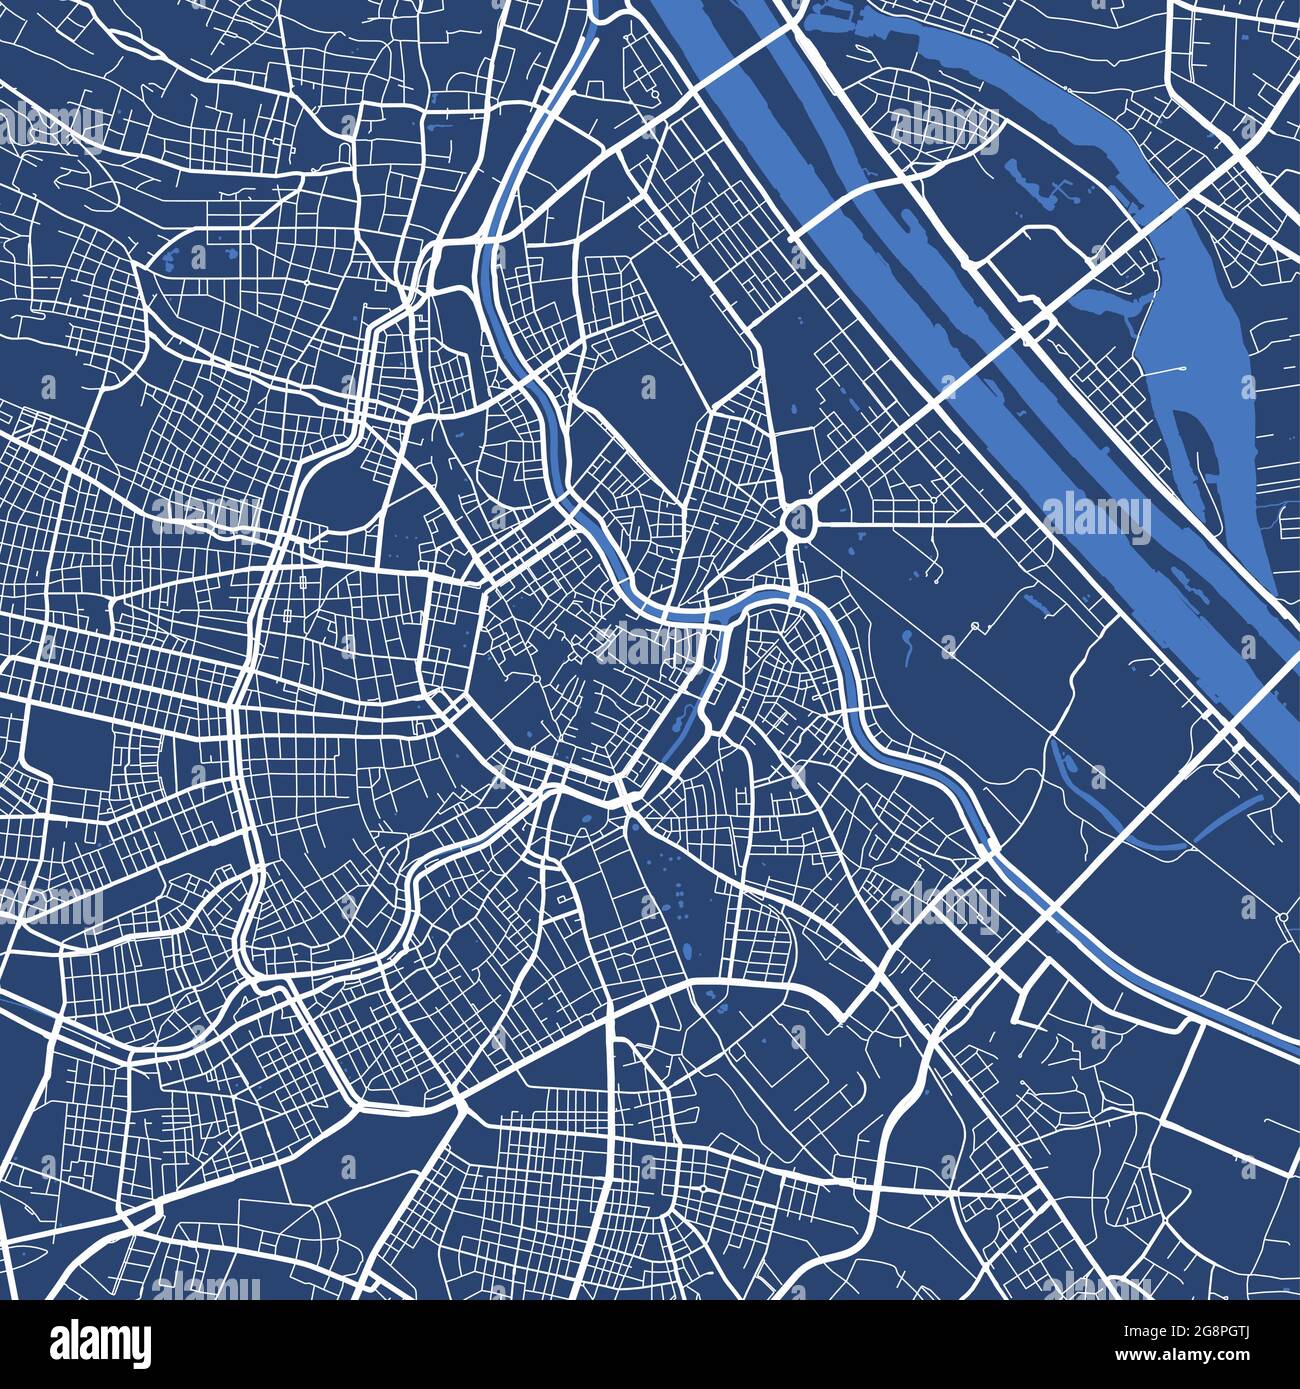 Cartellone dettagliato dell'area amministrativa della città di Vienna. Panorama cittadino. Mappa turistica grafica decorativa del territorio viennese. Vettore esente da royalty il Illustrazione Vettoriale